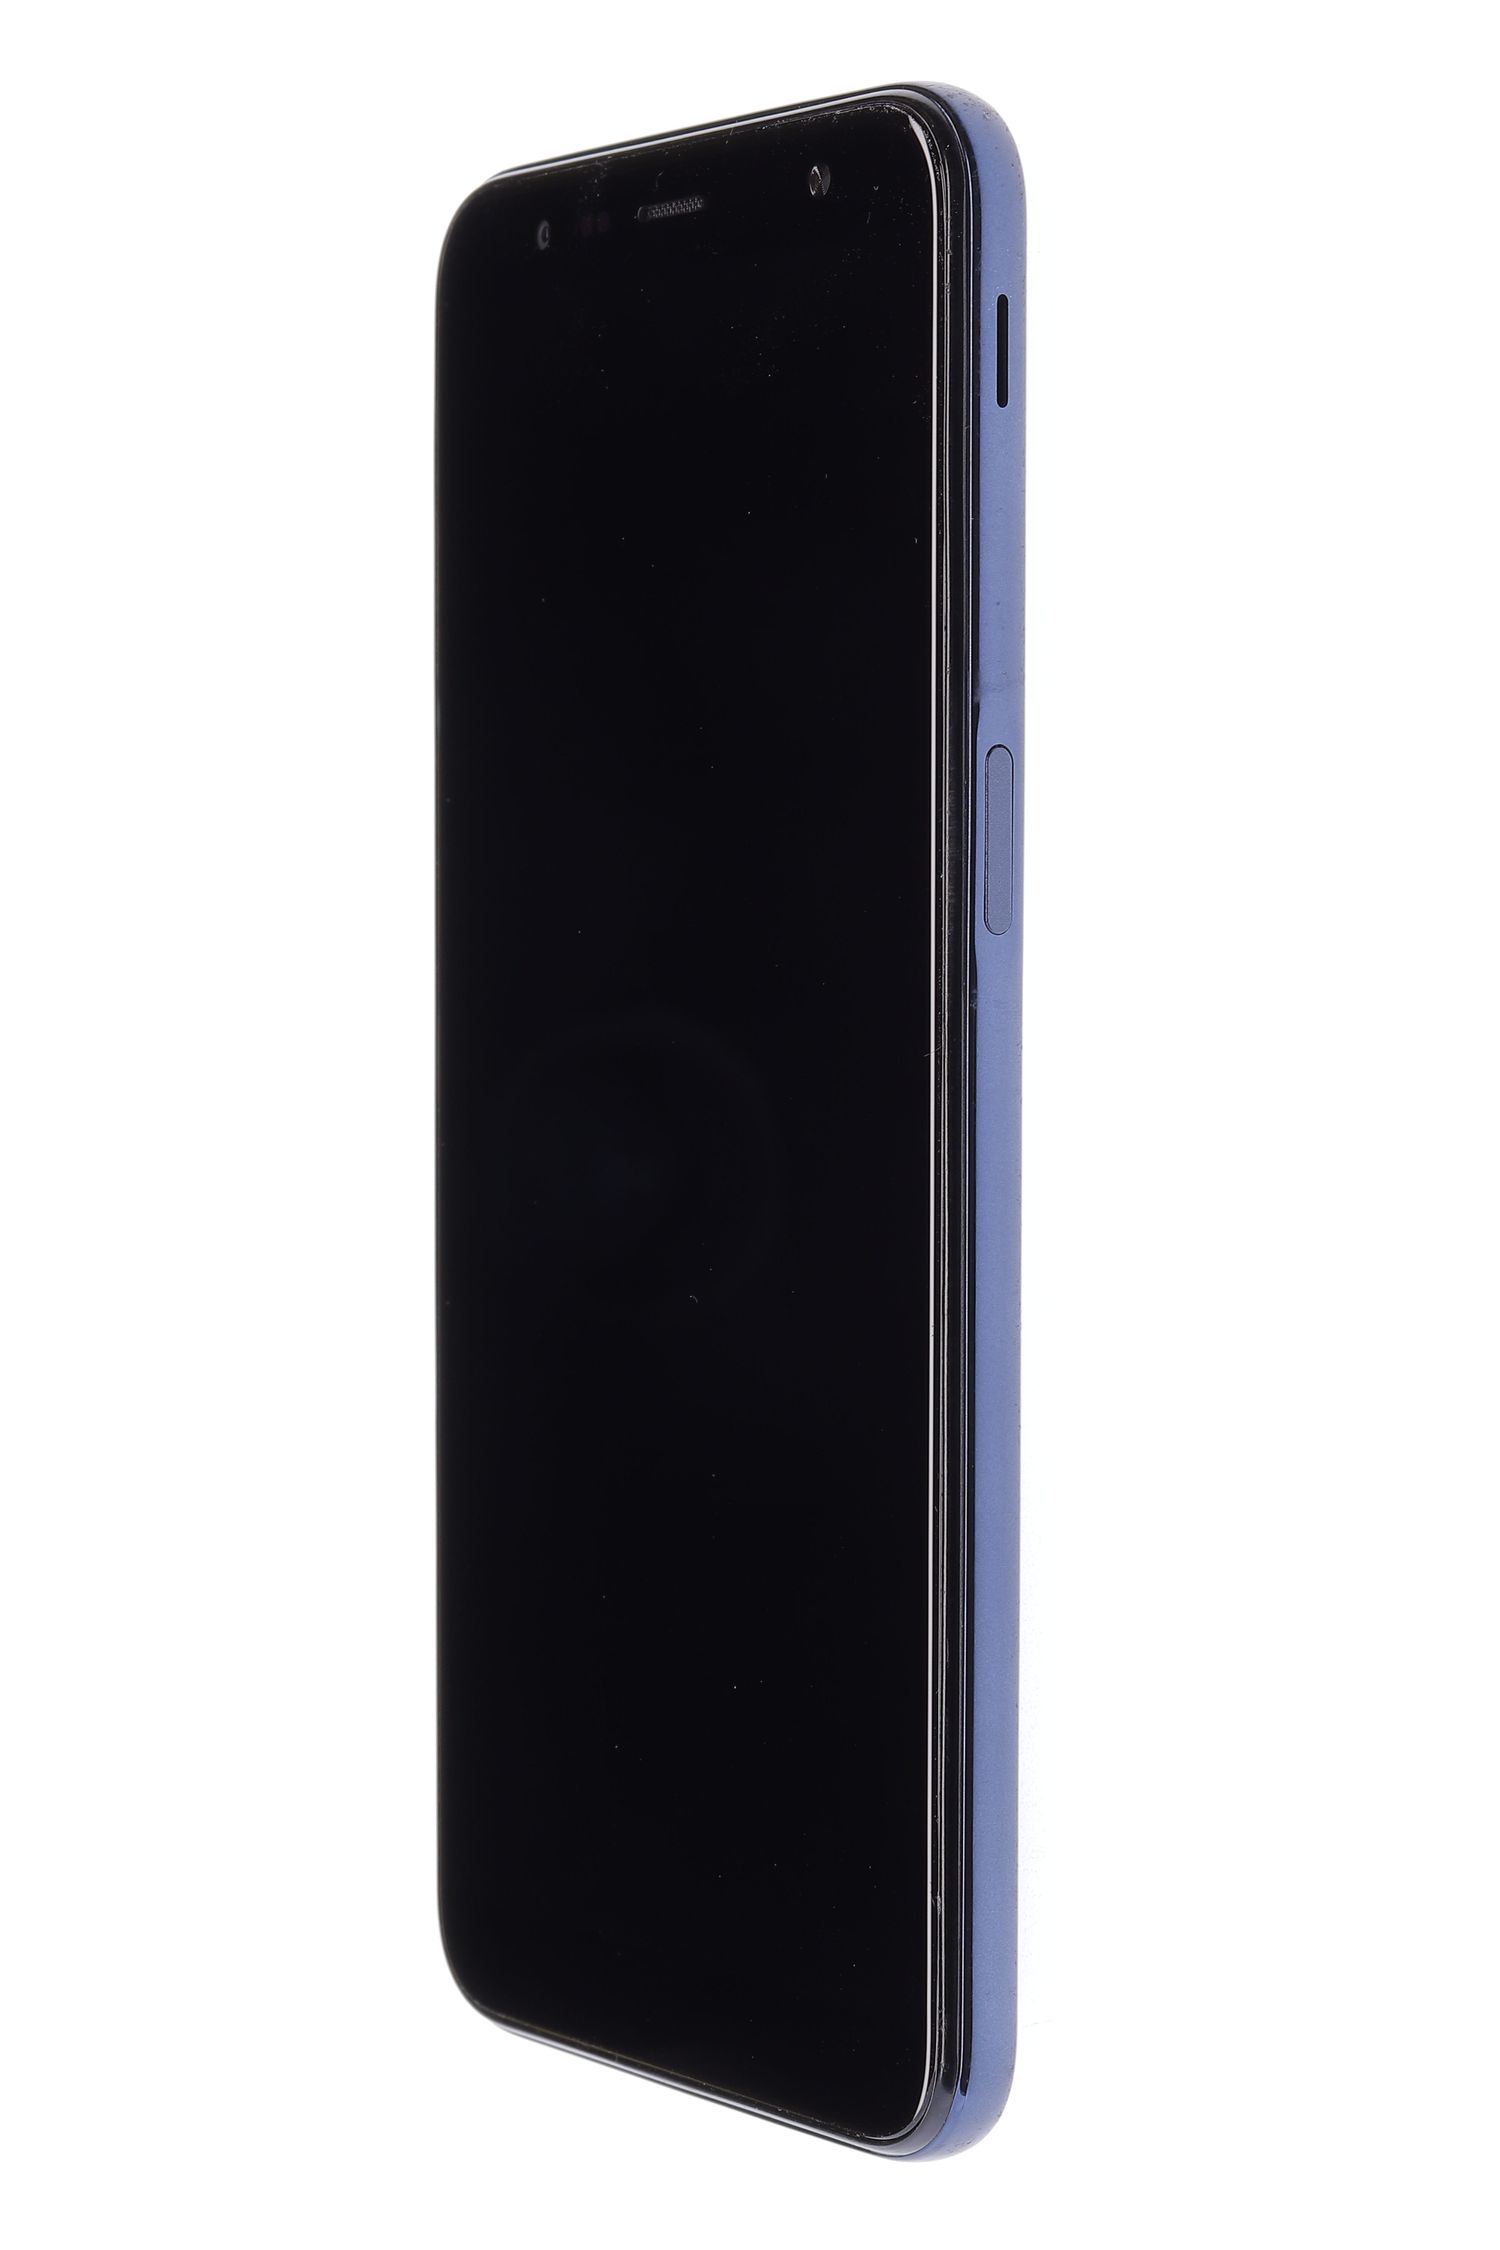 Κινητό τηλέφωνο Samsung Galaxy J6 Plus (2018), Grey, 32 GB, Foarte Bun